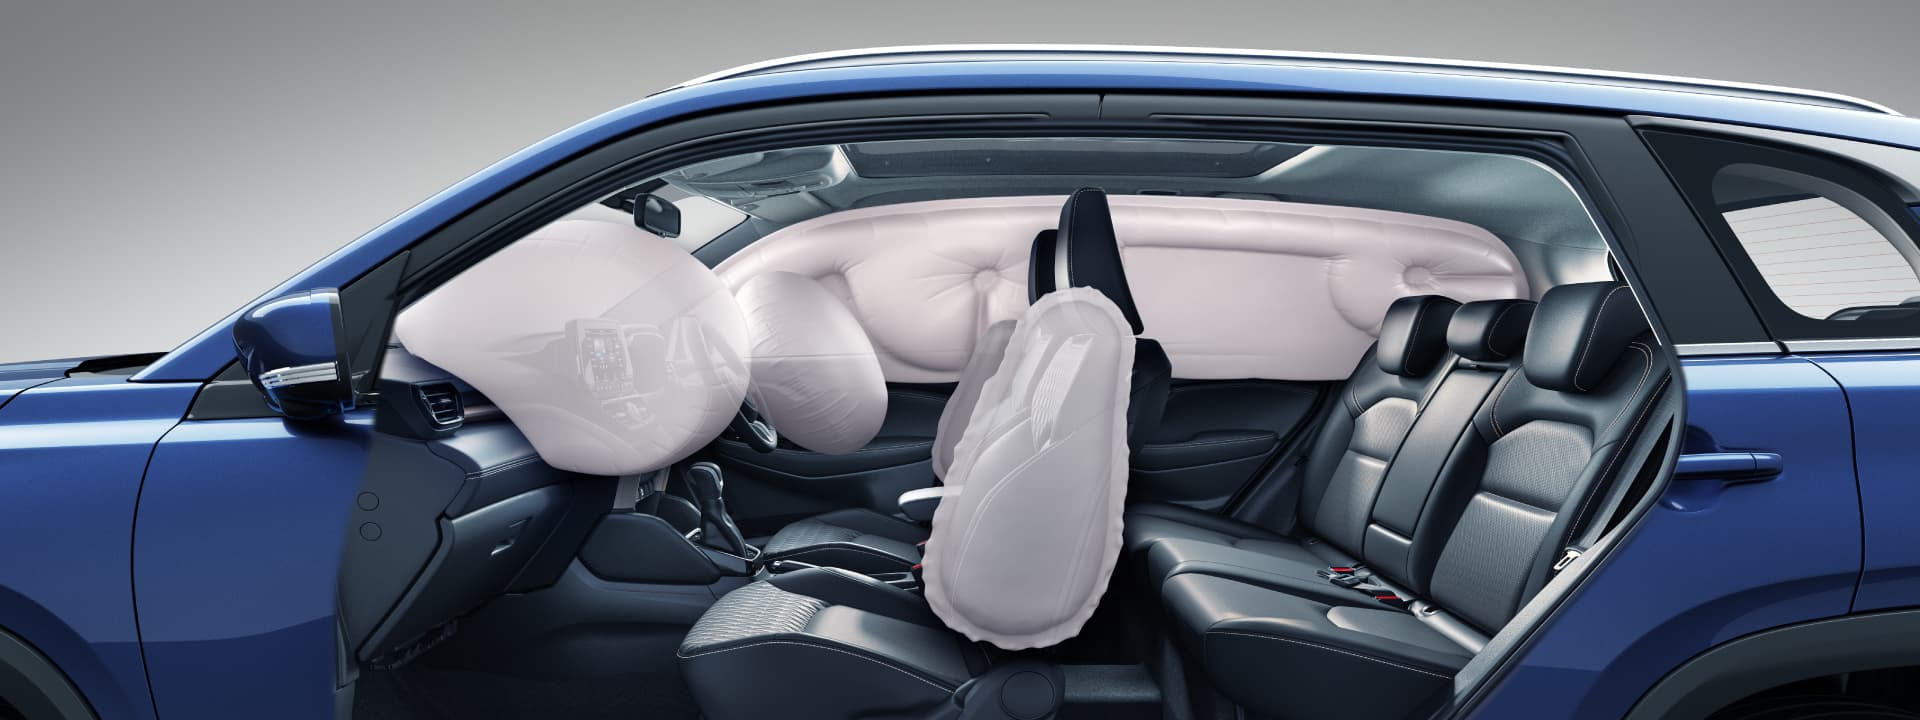 Maruti Suzuki car airbags